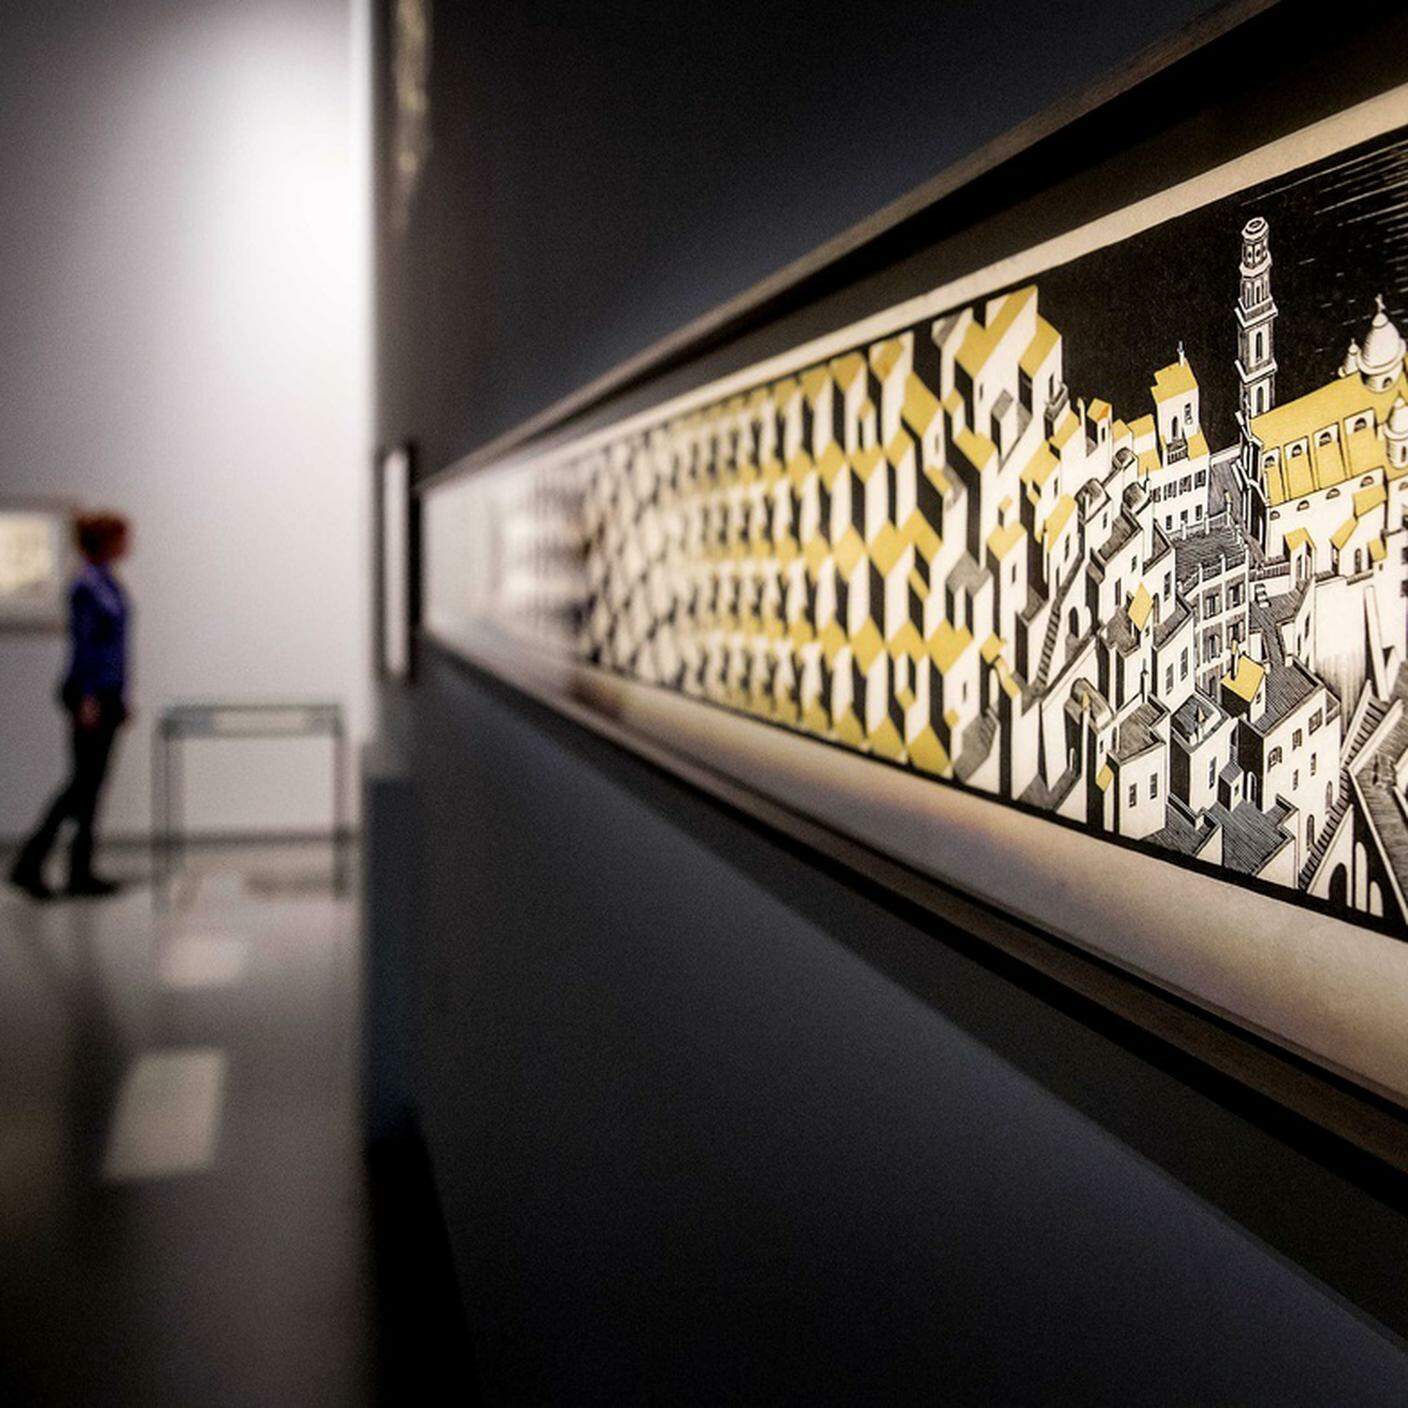 Anteprima della mostra "Escher's Journey" al Fries Museum di Leeuwarden, Paesi Bassi, 24 aprile 2018